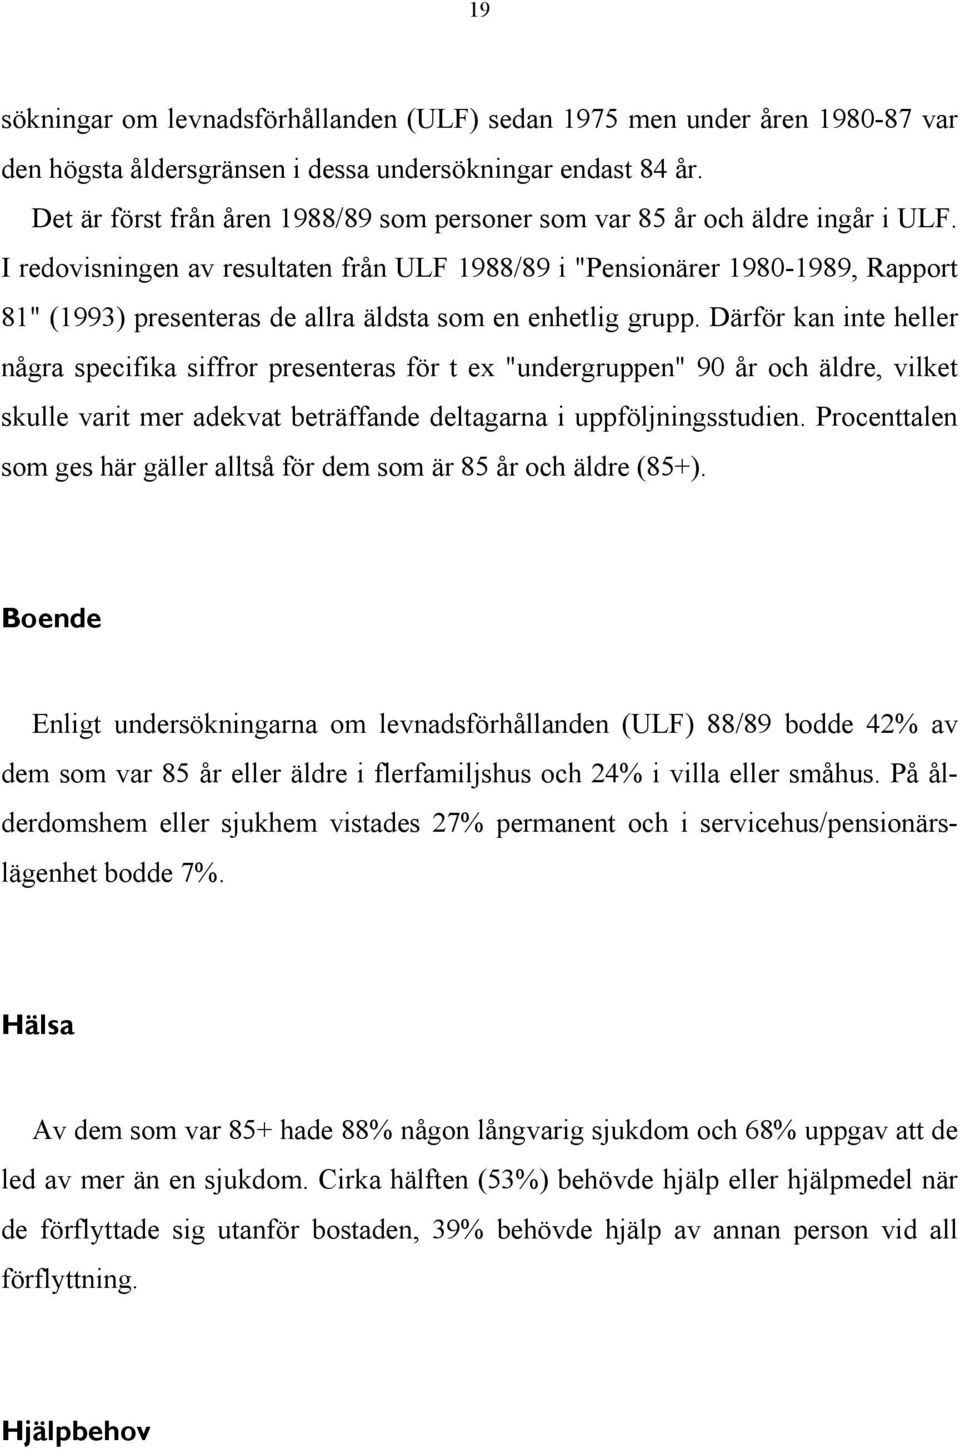 I redovisningen av resultaten från ULF 1988/89 i "Pensionärer 1980-1989, Rapport 81" (1993) presenteras de allra äldsta som en enhetlig grupp.